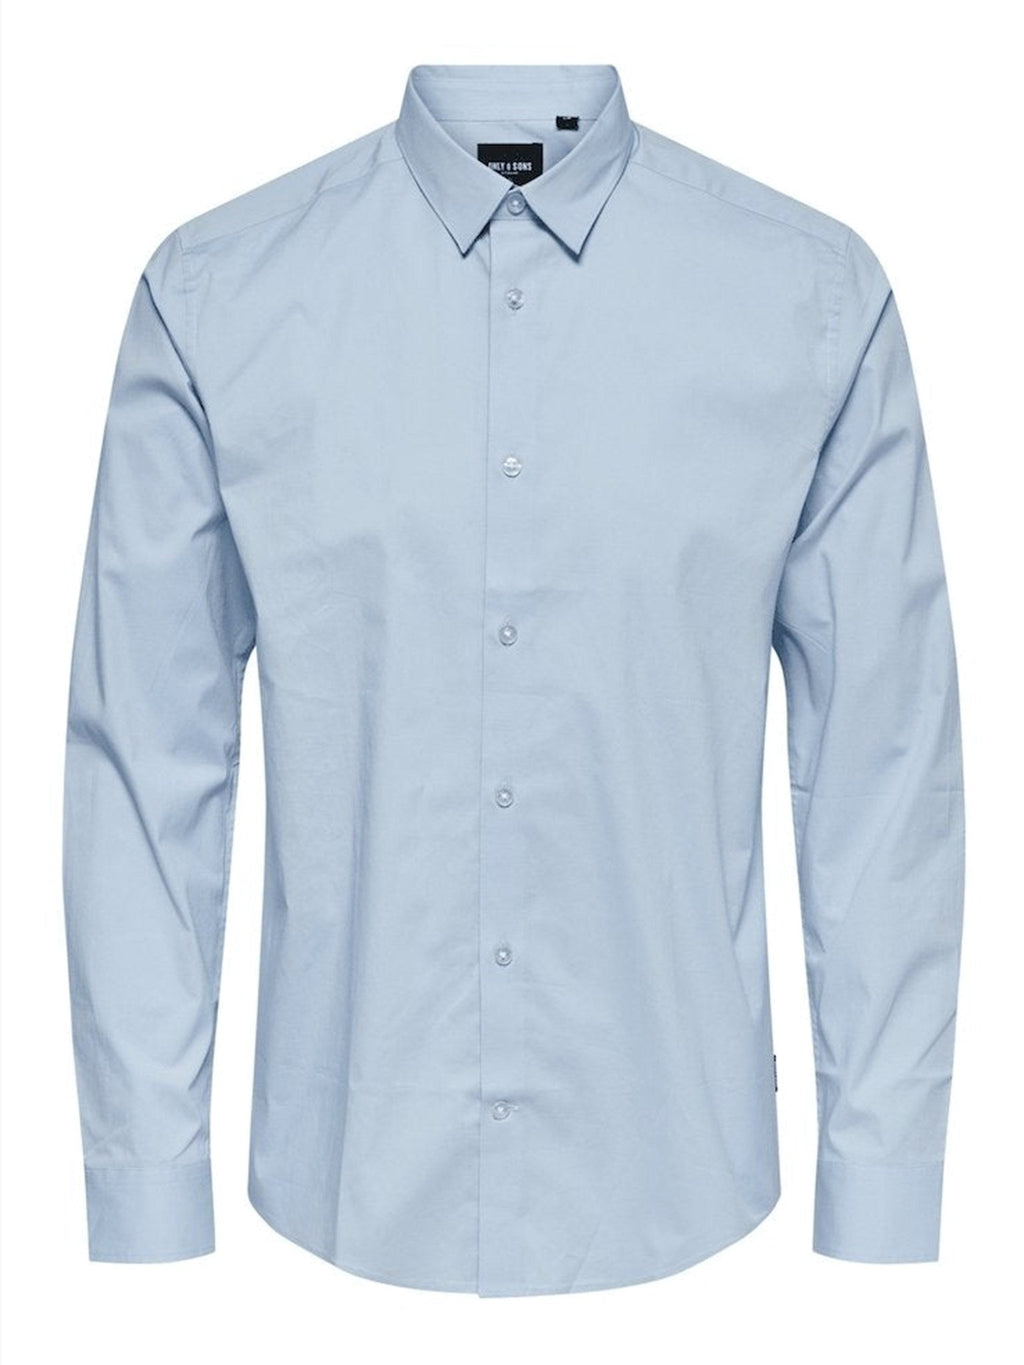 Bart Eco Shirt - Blu chiaro (cotone organico)